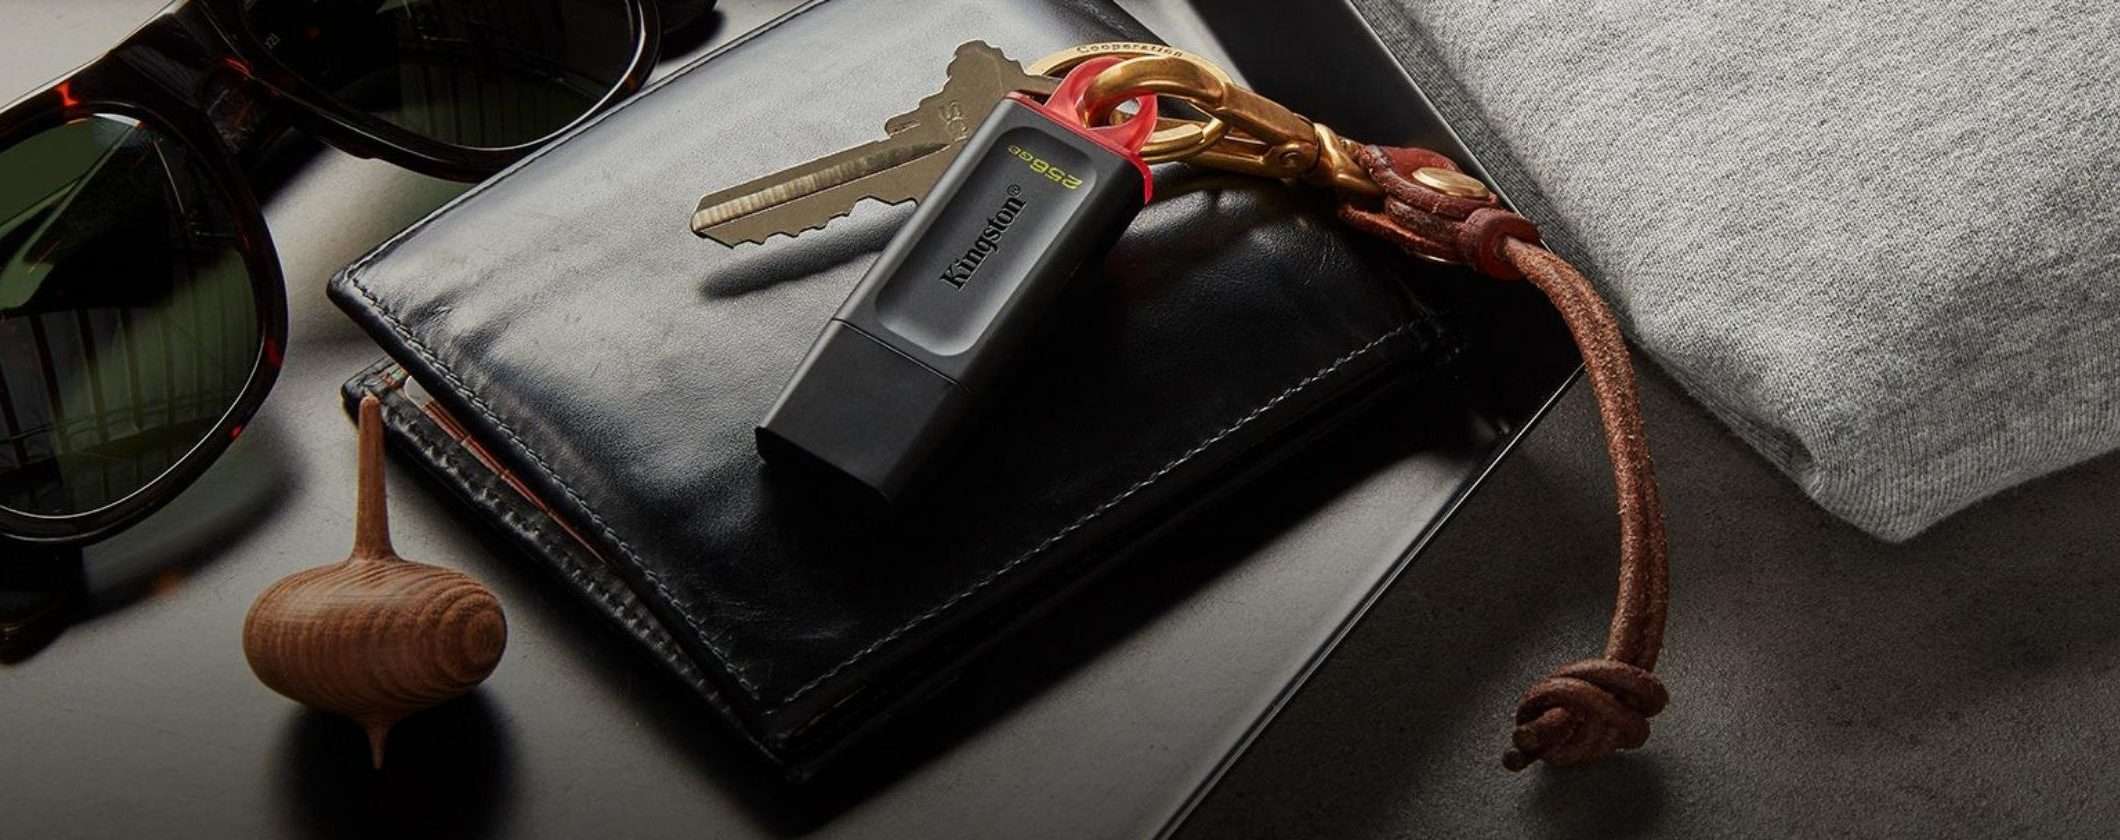 Chiavetta USB Kingston veloce e CAPIENTE a 6€ su Amazon